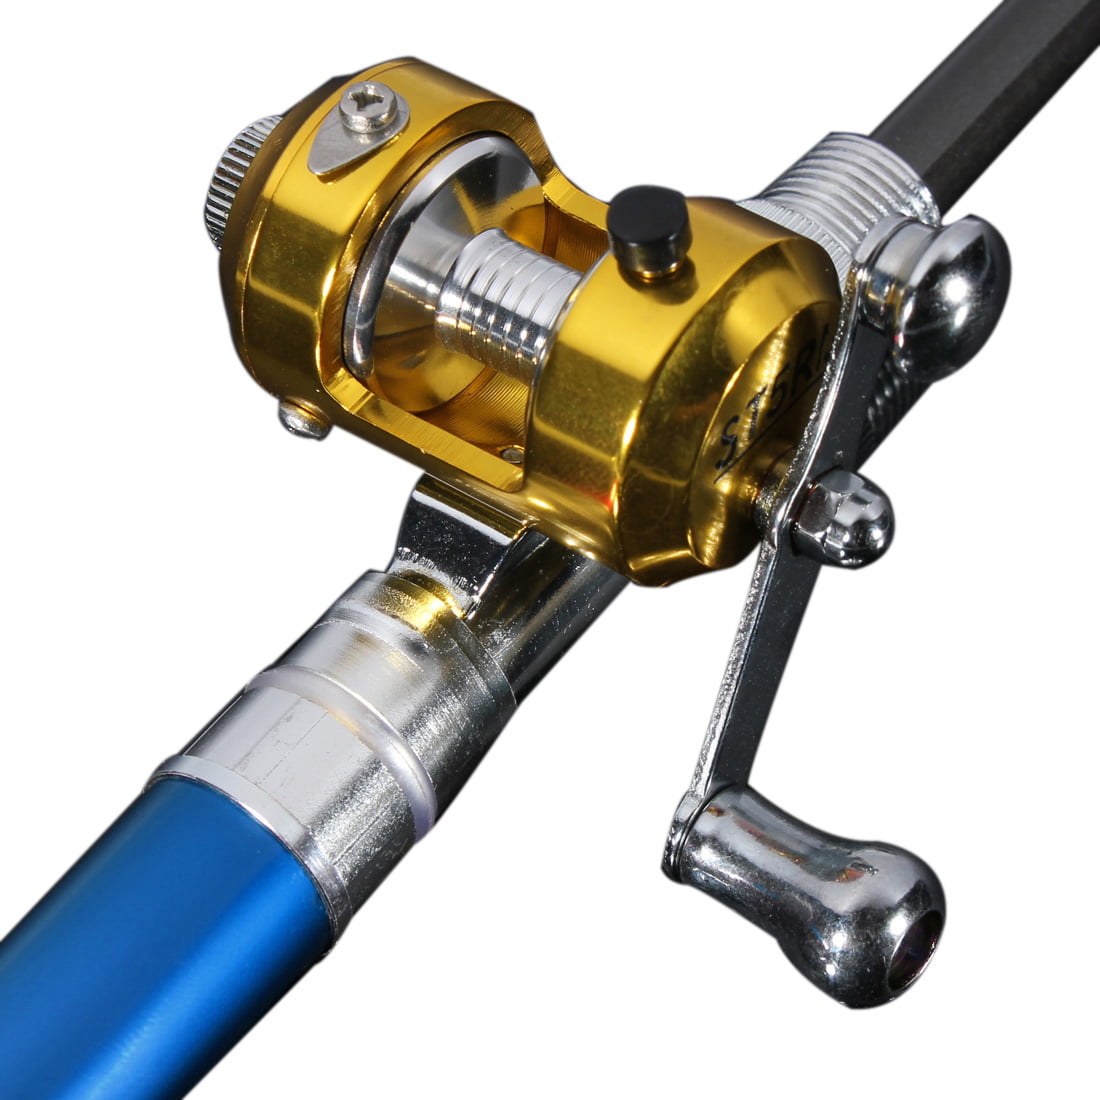 Telescopic Mini Portable Pocket Fish Aluminum Alloy Pen Fishing Rod Pole Reel US 